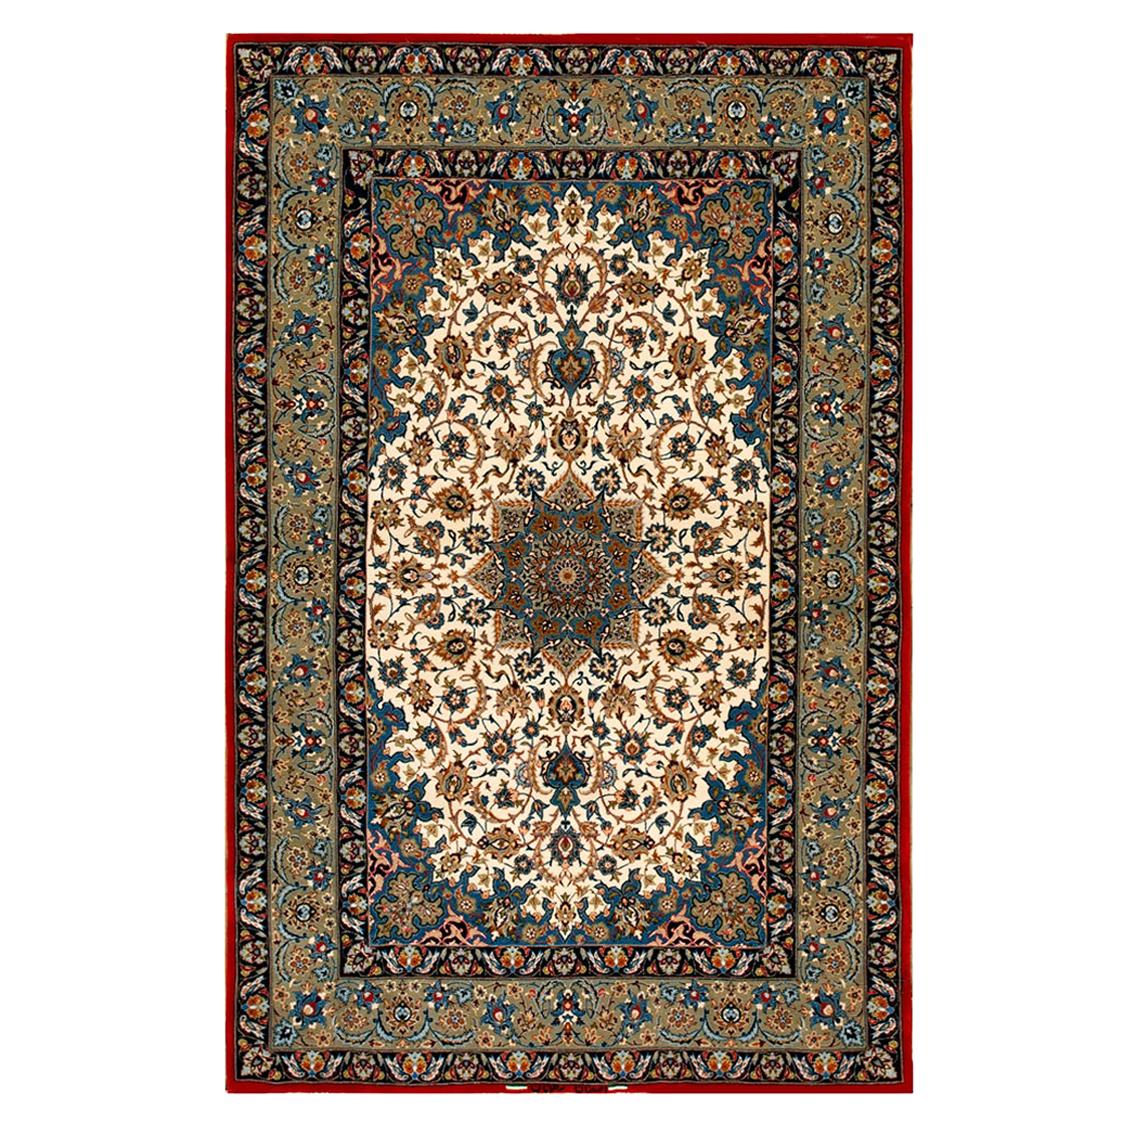 Mid 20th Century Isfahan Carpet ( 3'7" x 5'6" - 109 x 167 )